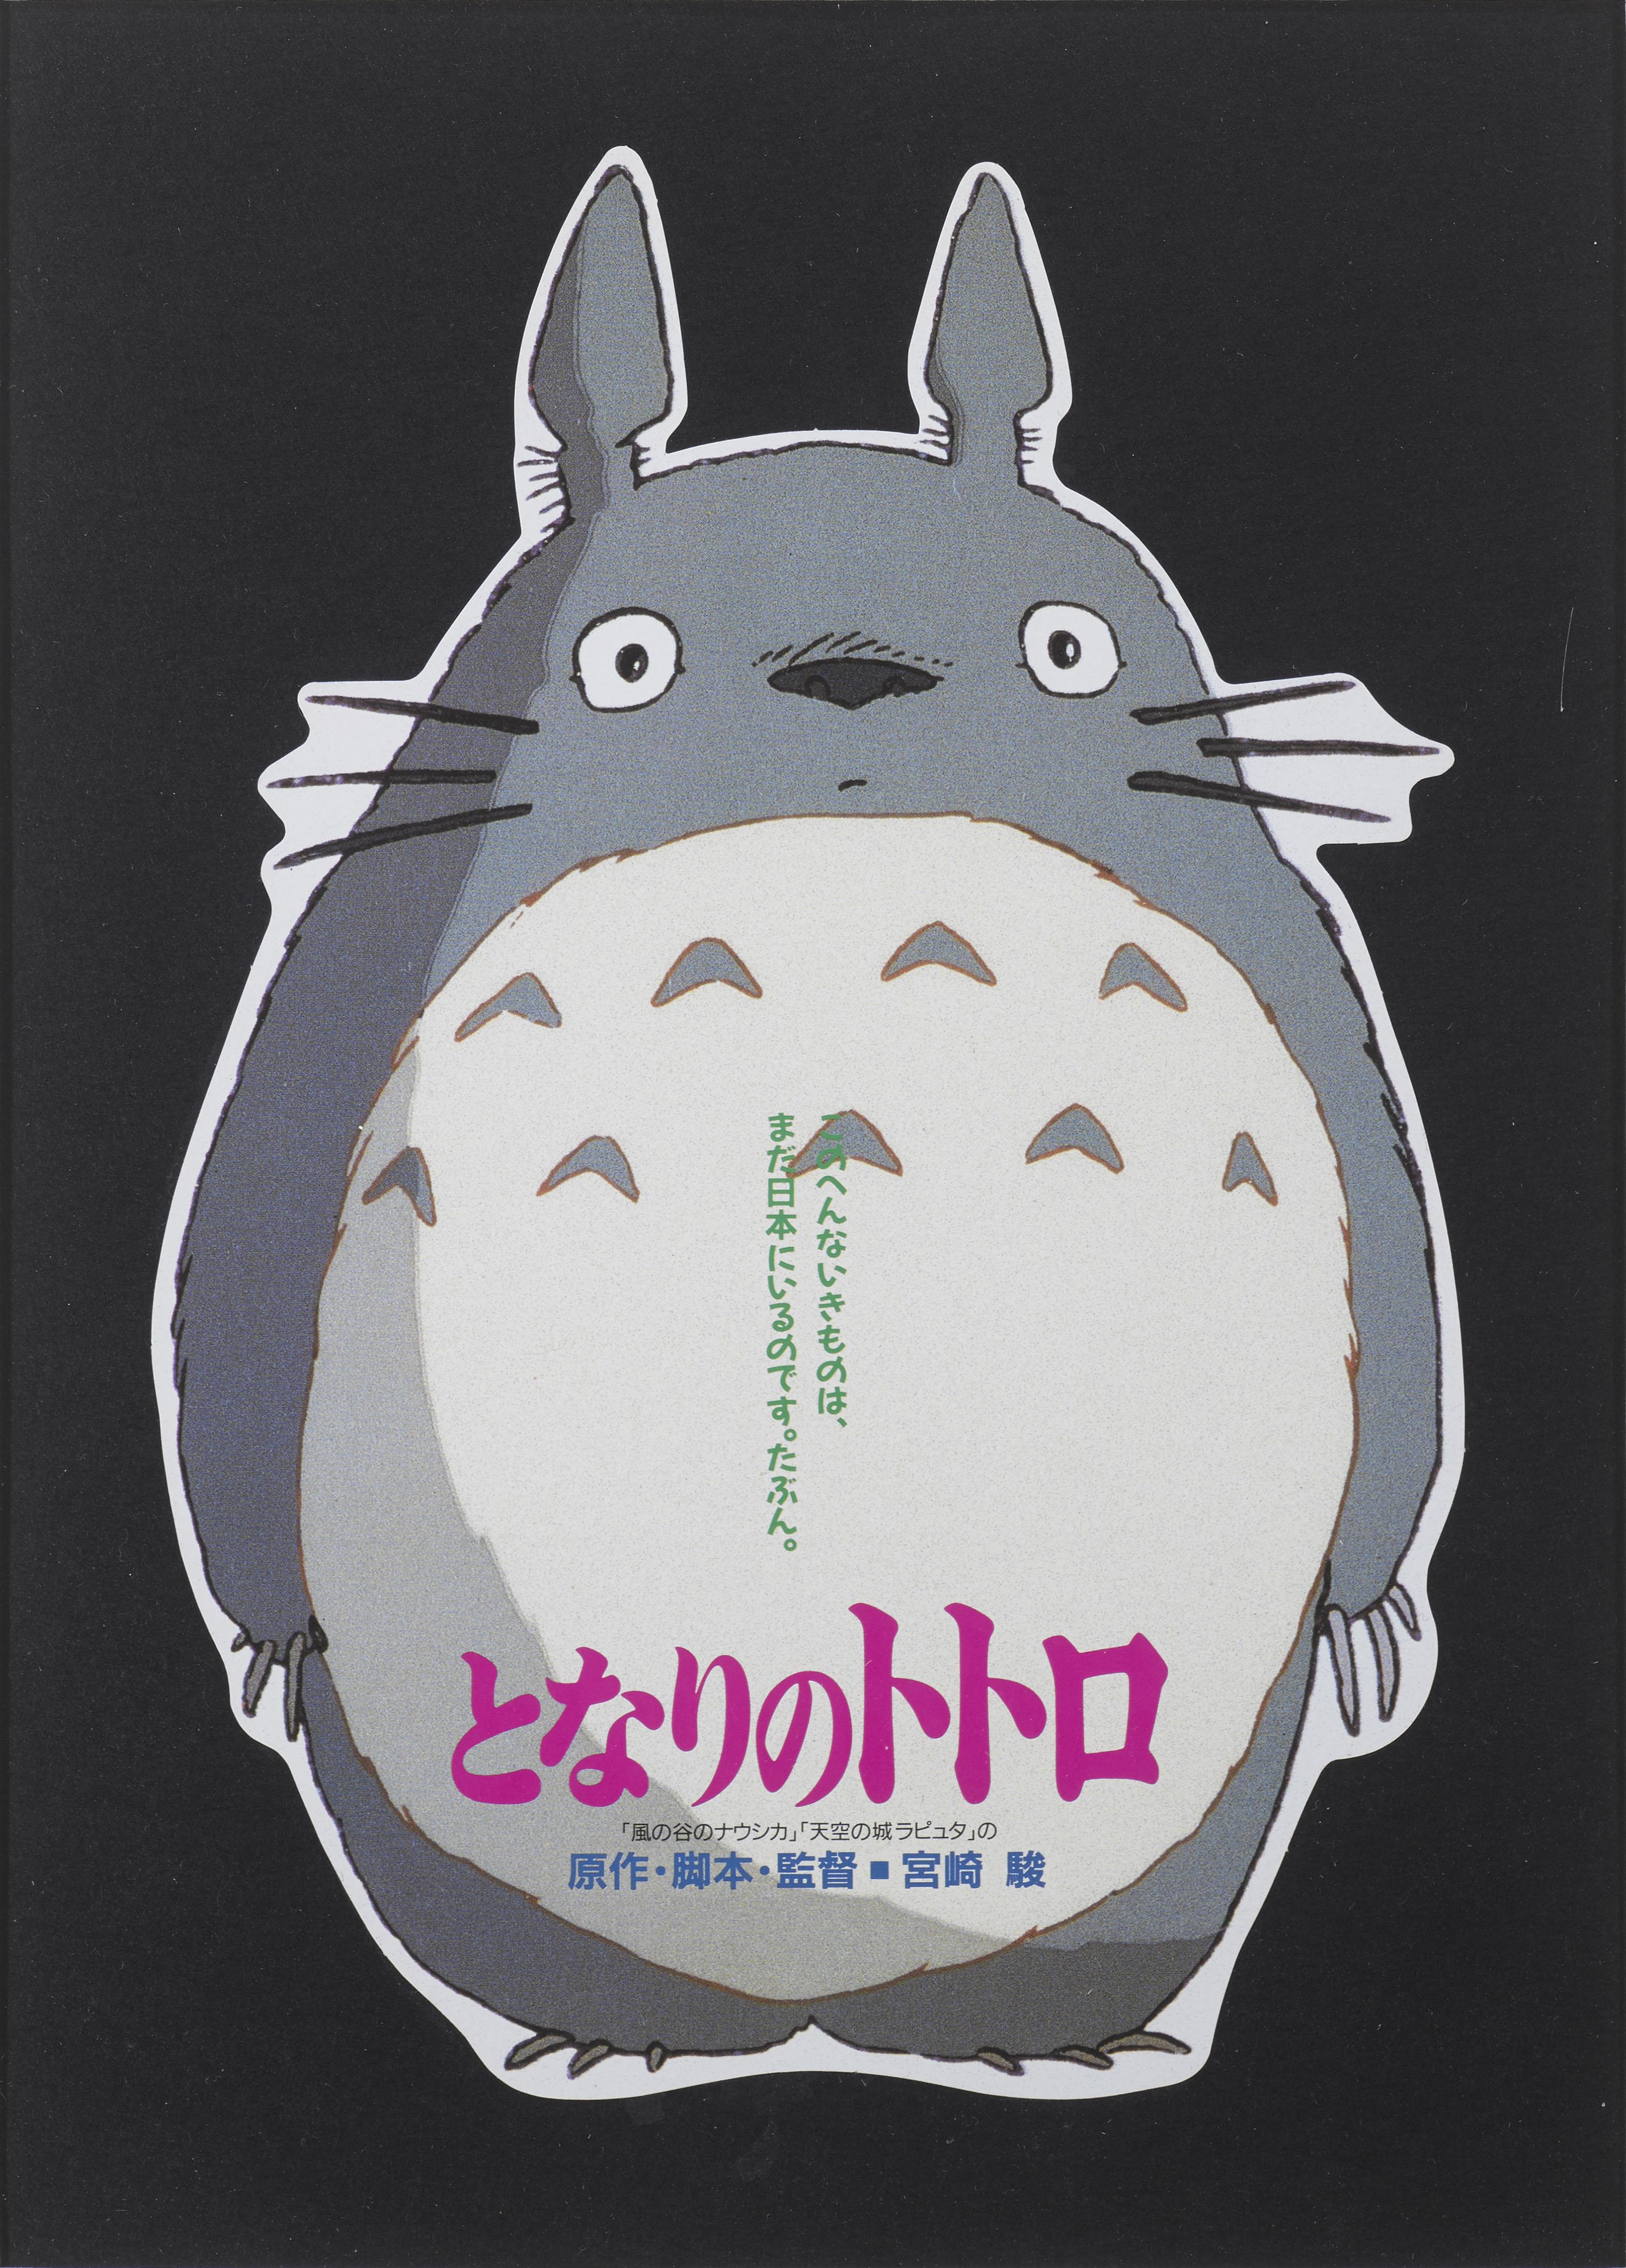 Japanese Tonari No Totoro / My Neighbor Totoro